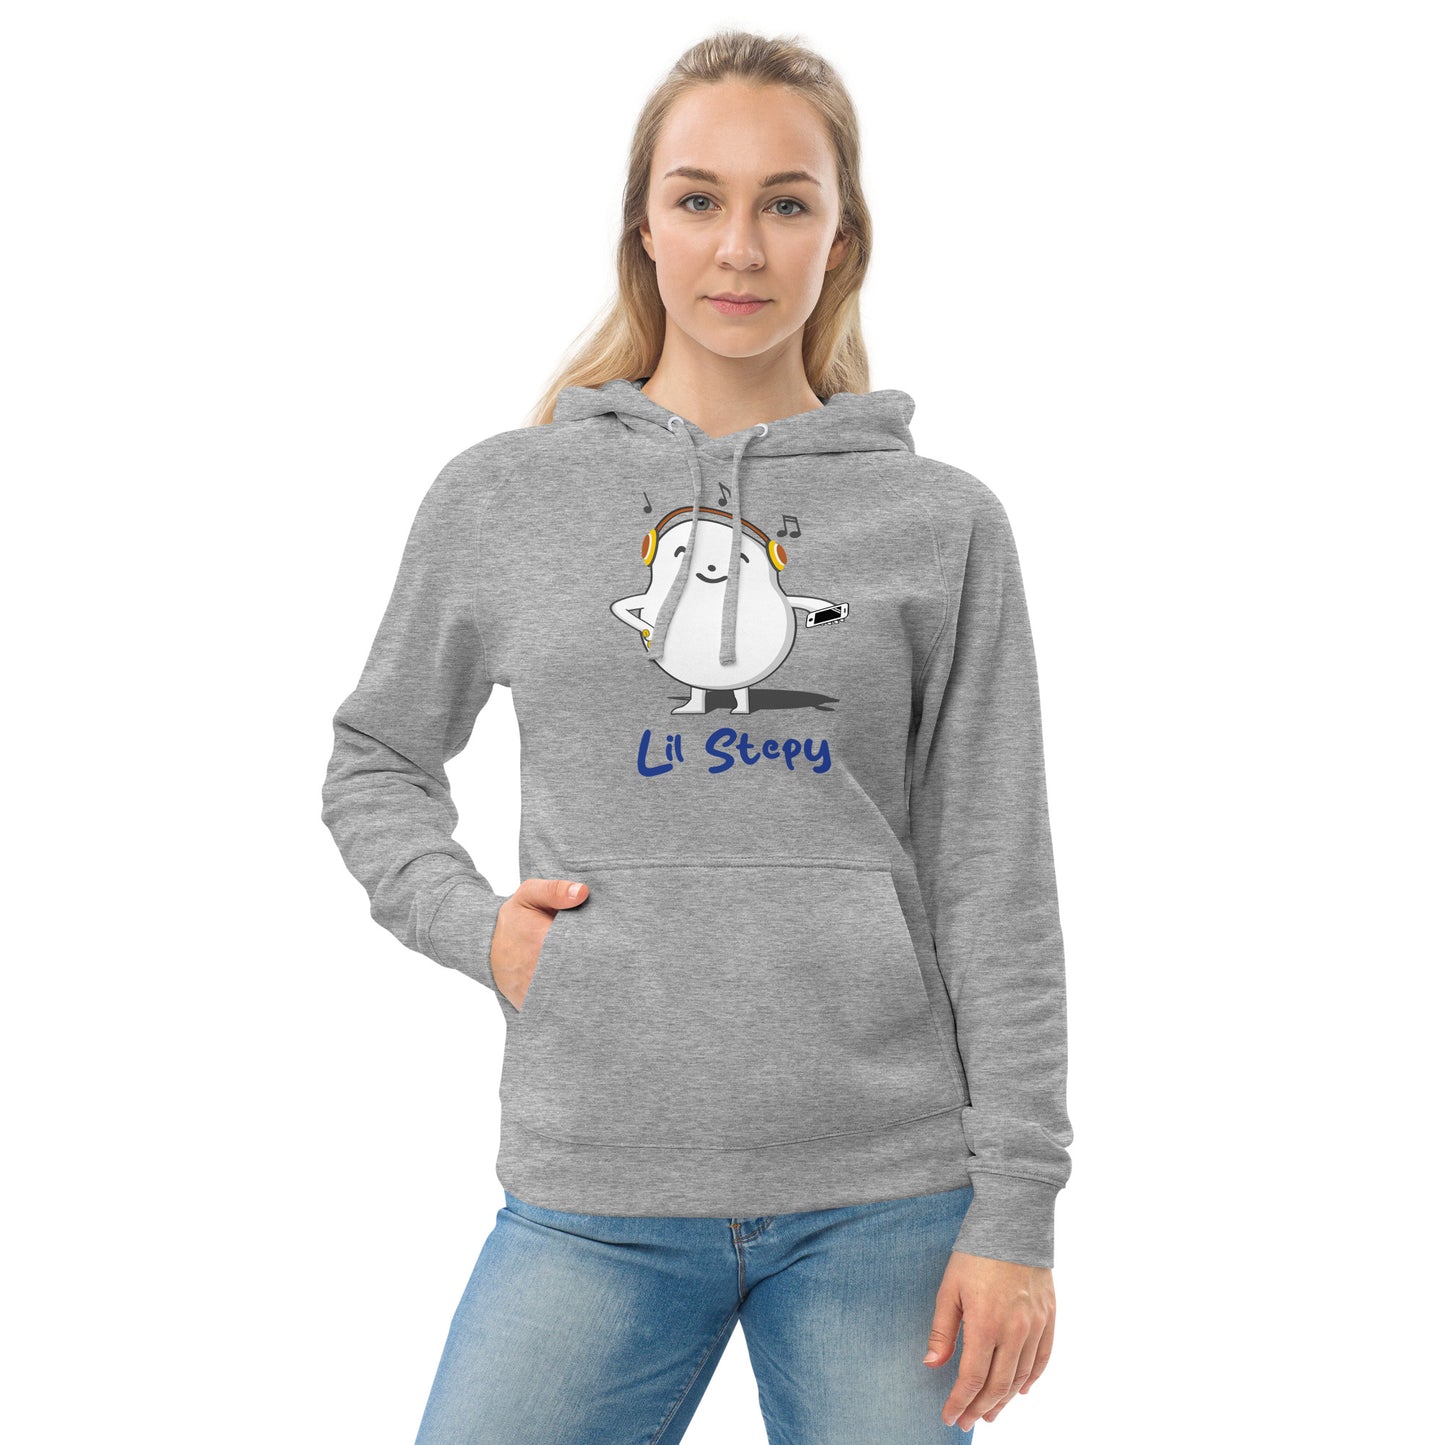 Unisex kangaroo pocket hoodie